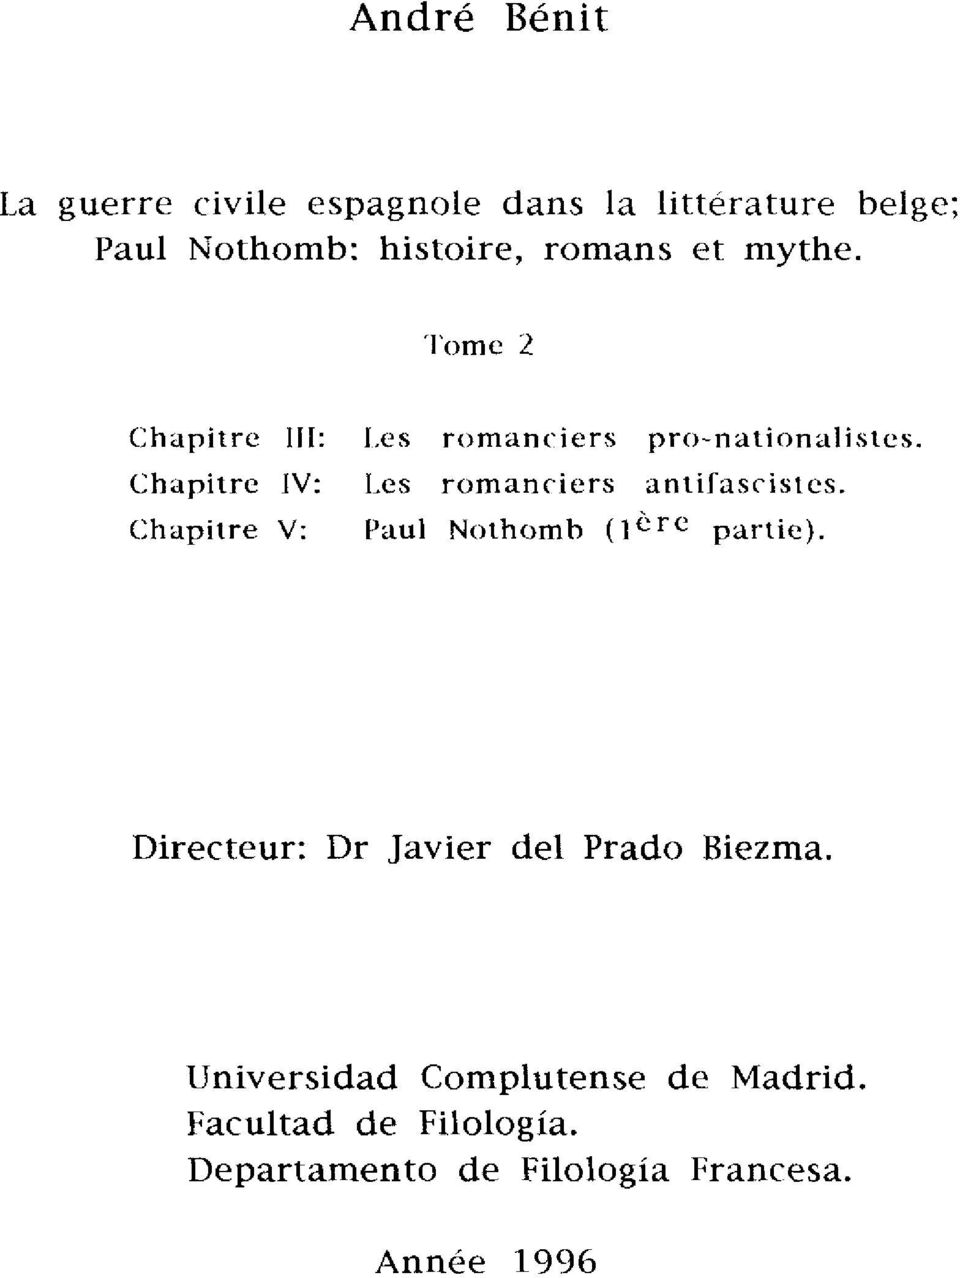 Les romanciers anlifascisies. Paul Nothomb (l< -~ partie). Directeur: Dr Javier del Prado Biezma.